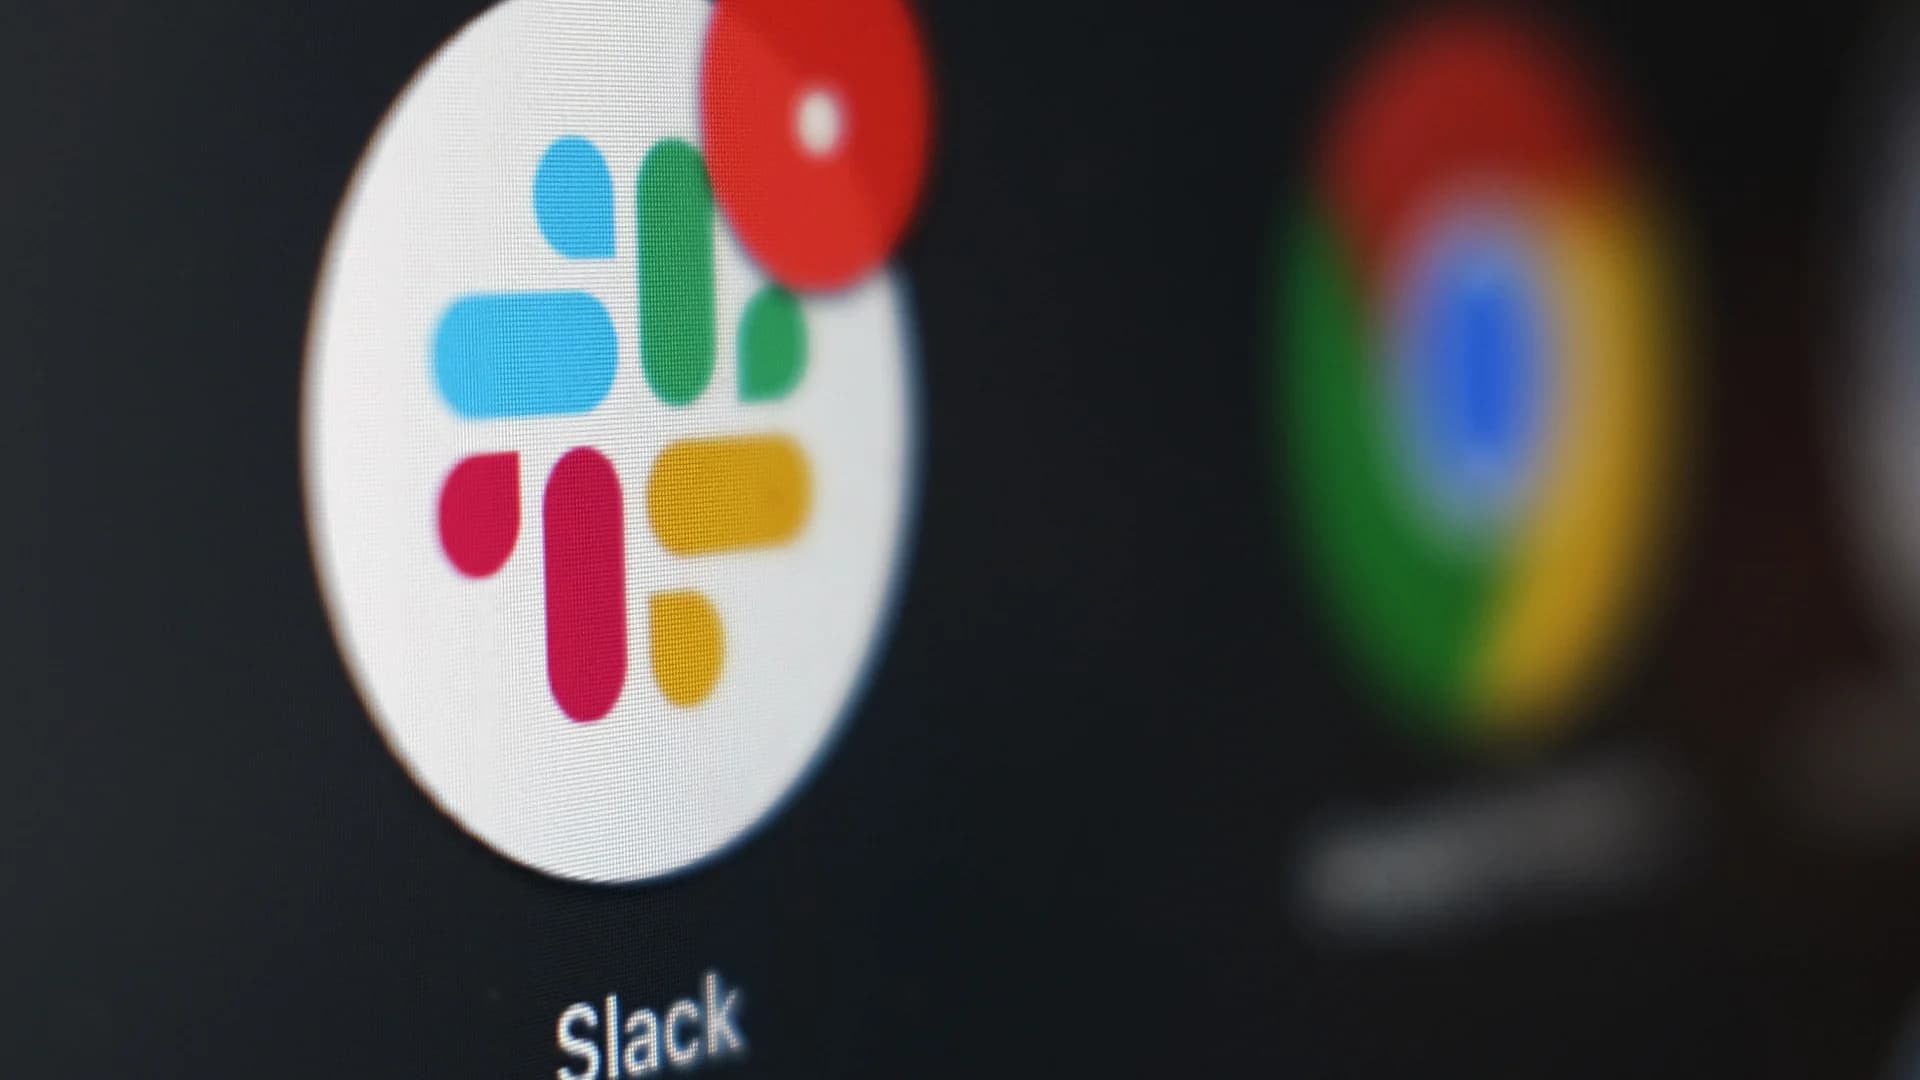 Slack kicks off 2021 with a global outage